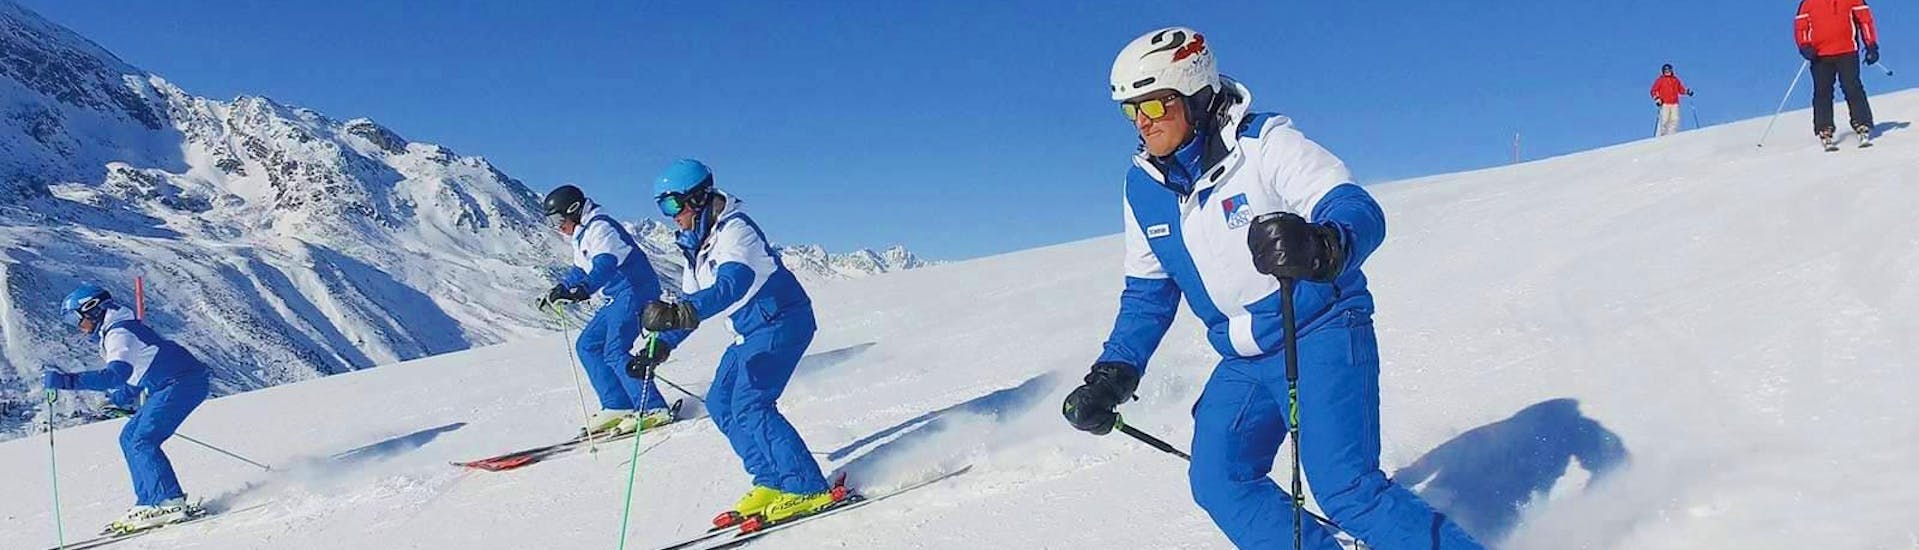 Clases de esquí para adultos a partir de 5 años con experiencia.